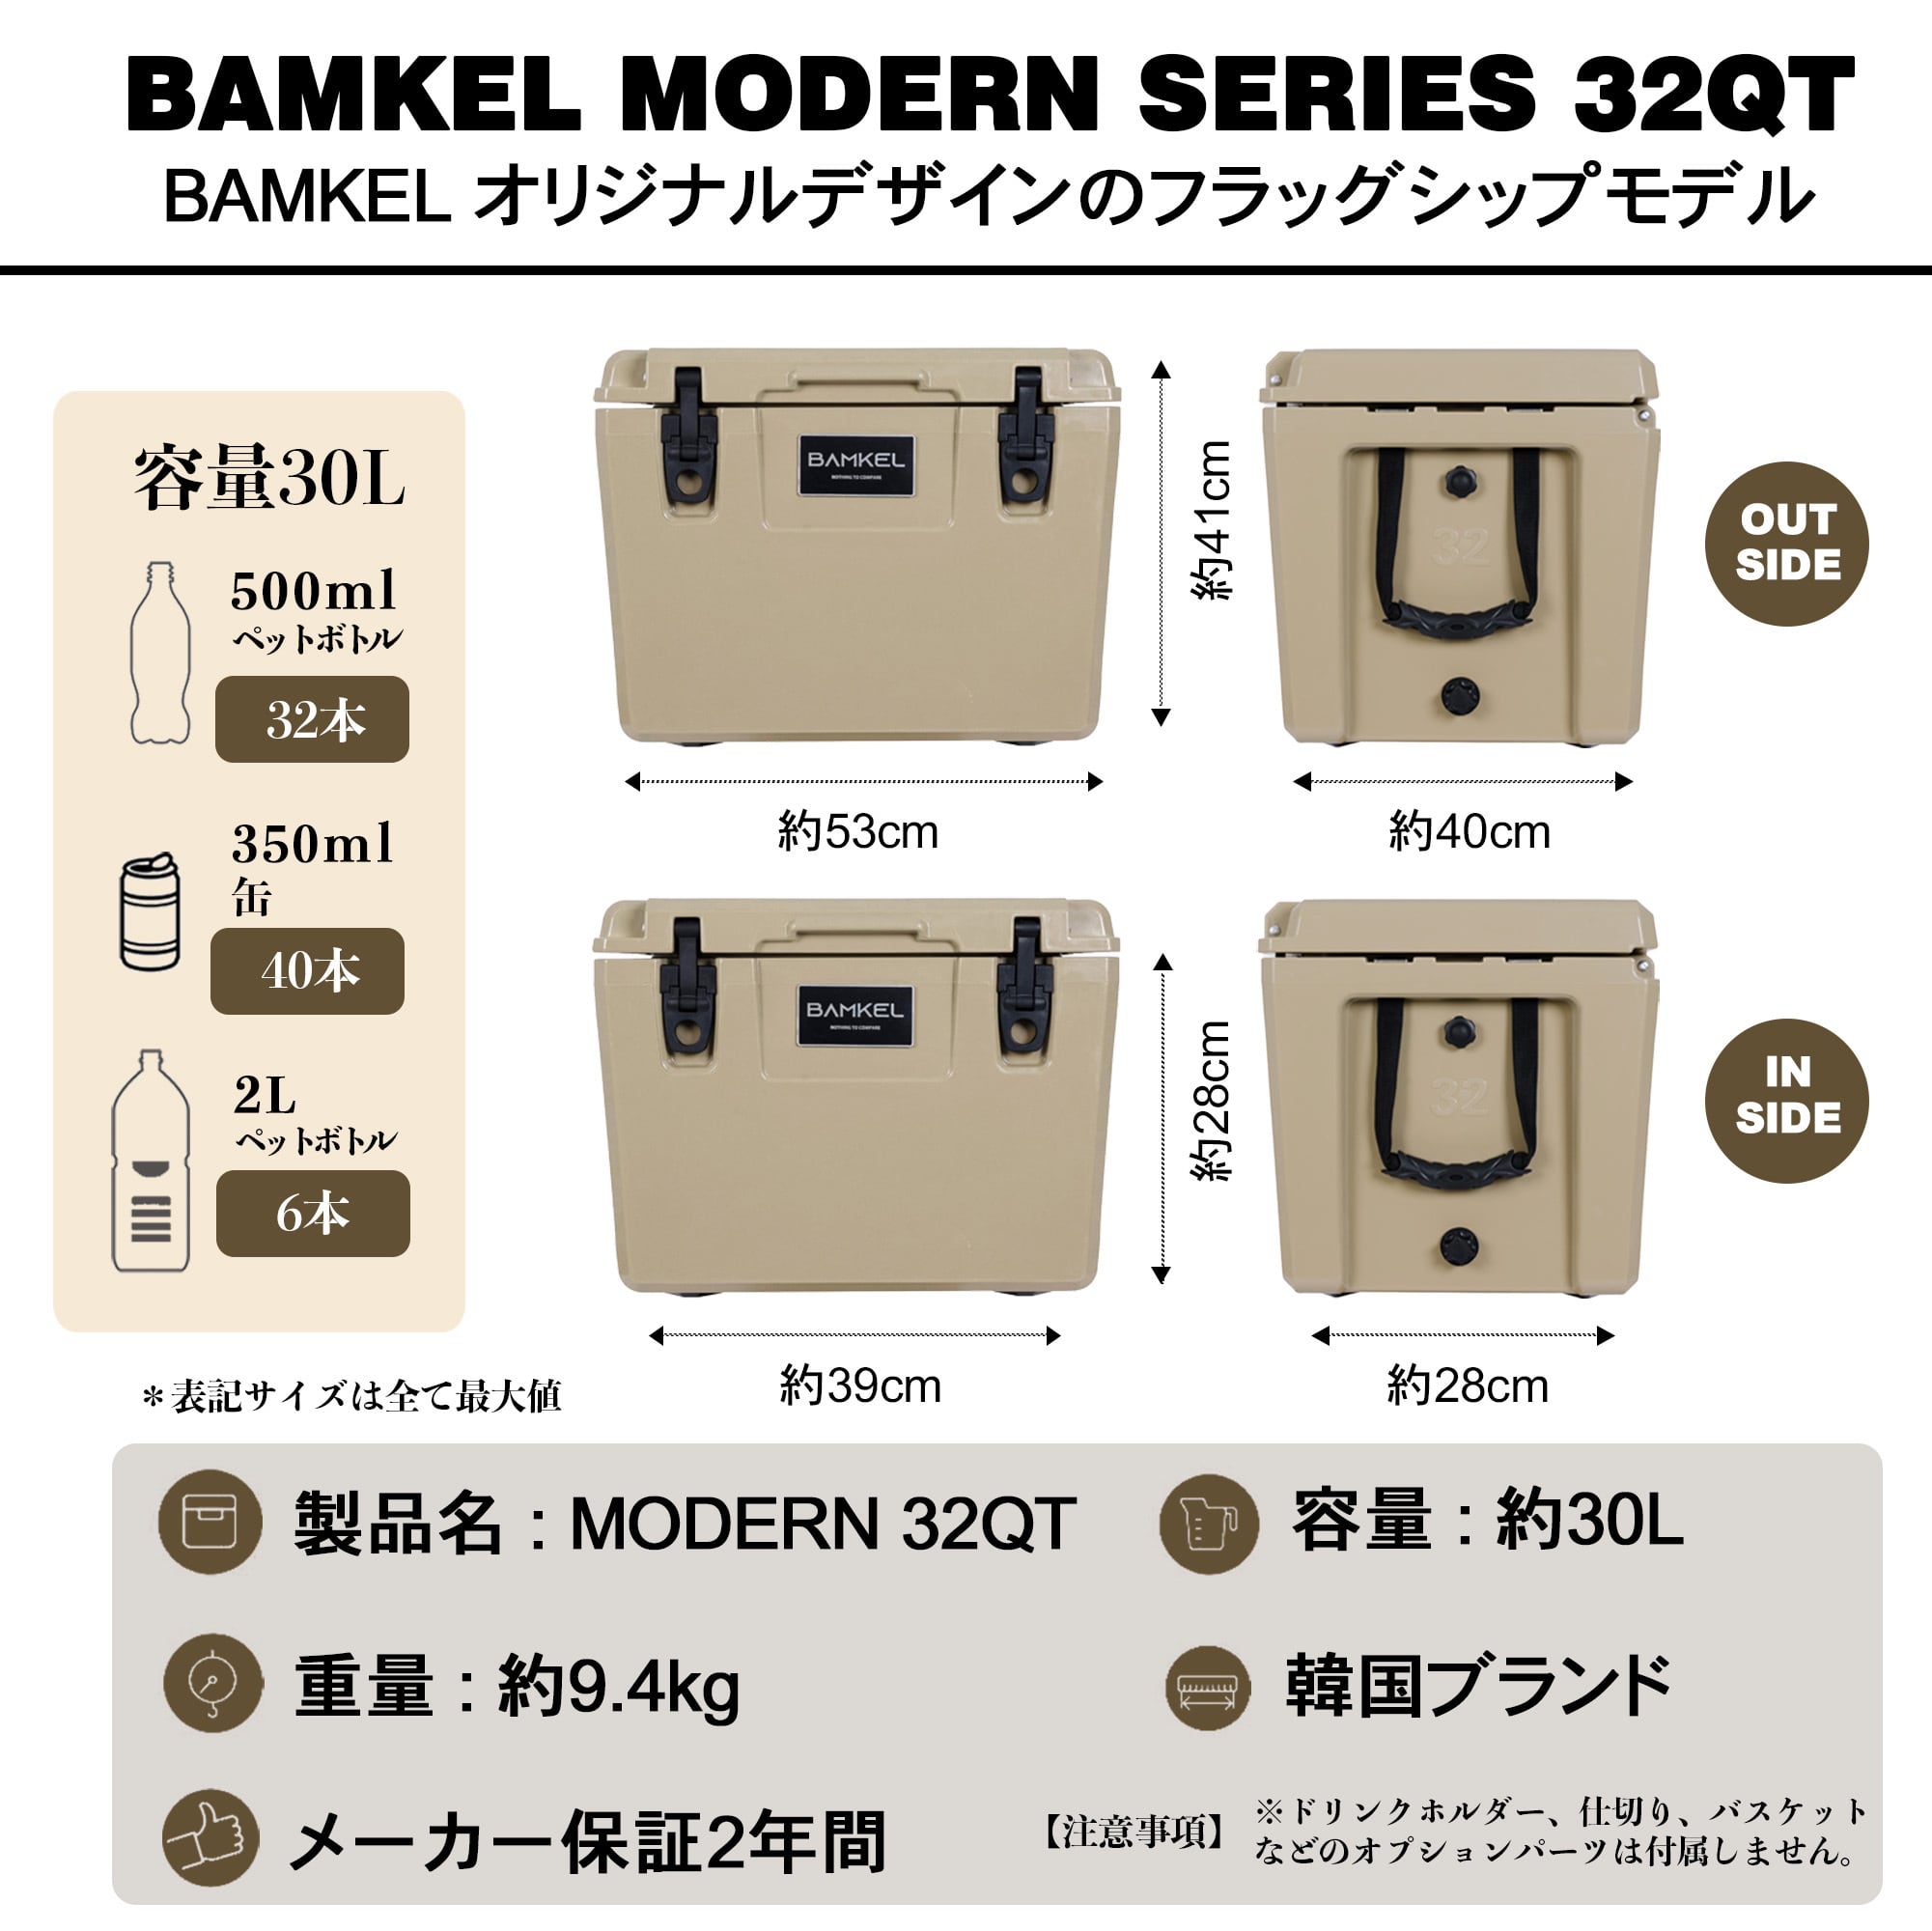 BAMKEL クーラーボックス 30L モダンシリーズ ハードクーラー 選べるカラー アウトドア キャンプ バンケル MODERN  32QT【日本正規流通品】